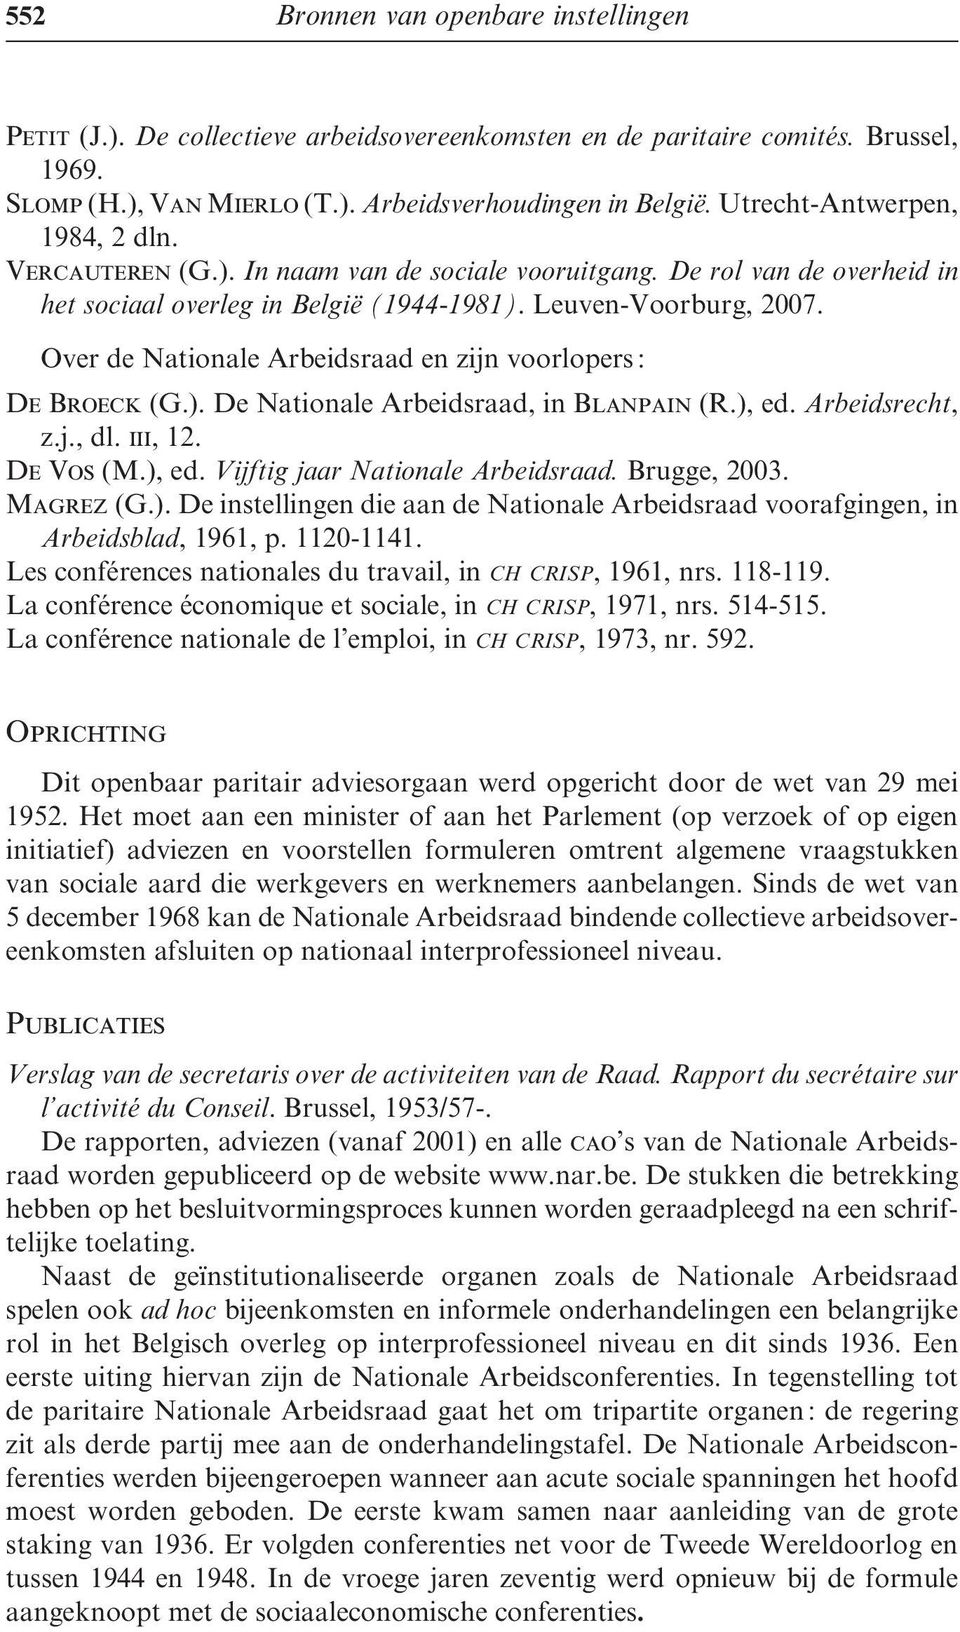 Over de Nationale Arbeidsraad en zijn voorlopers : De Broeck (G.). De Nationale Arbeidsraad, in Blanpain (R.), ed. Arbeidsrecht, z.j., dl. iii, 12. De Vos (M.), ed. Vijftig jaar Nationale Arbeidsraad.